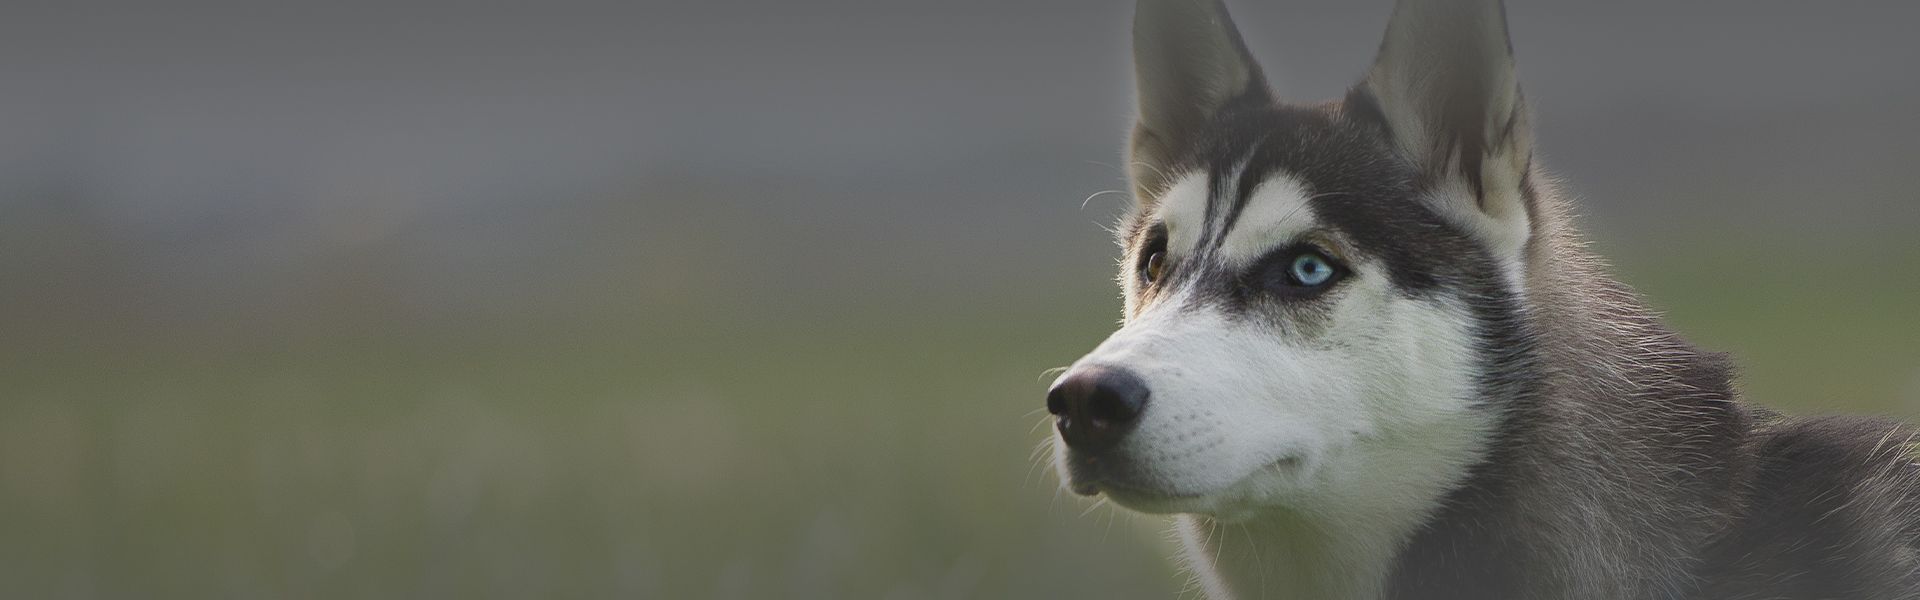 husky puppy in a green field